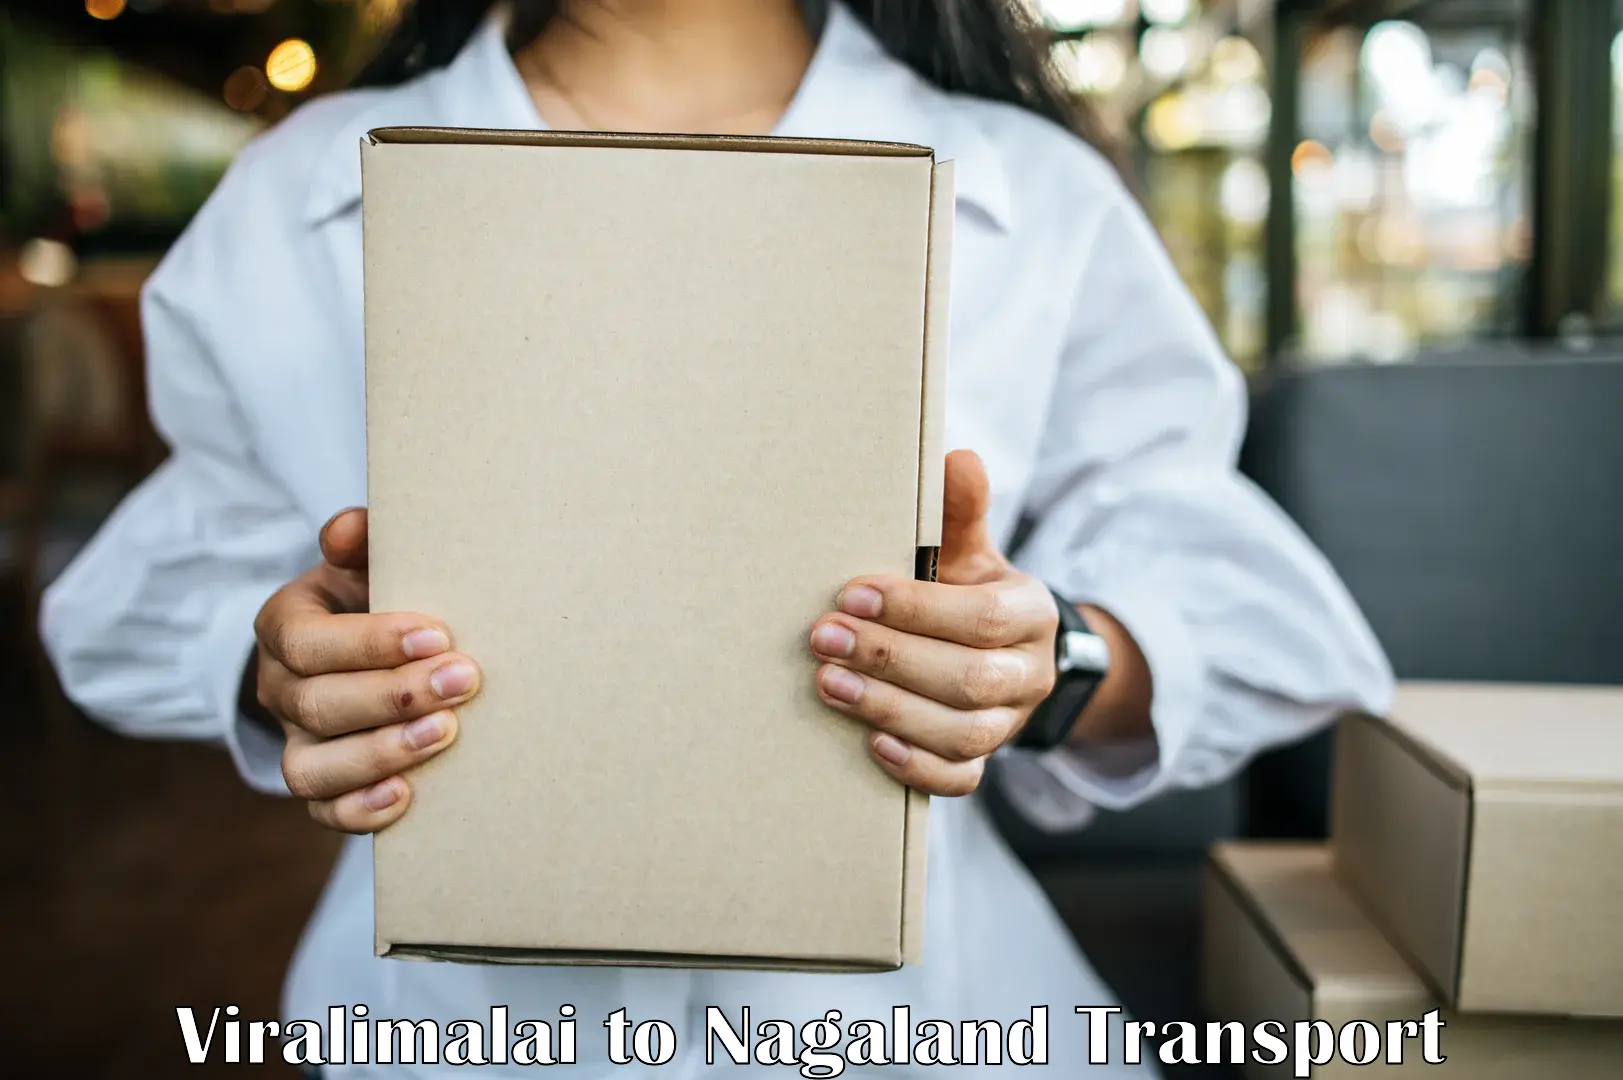 Online transport service Viralimalai to Tuensang